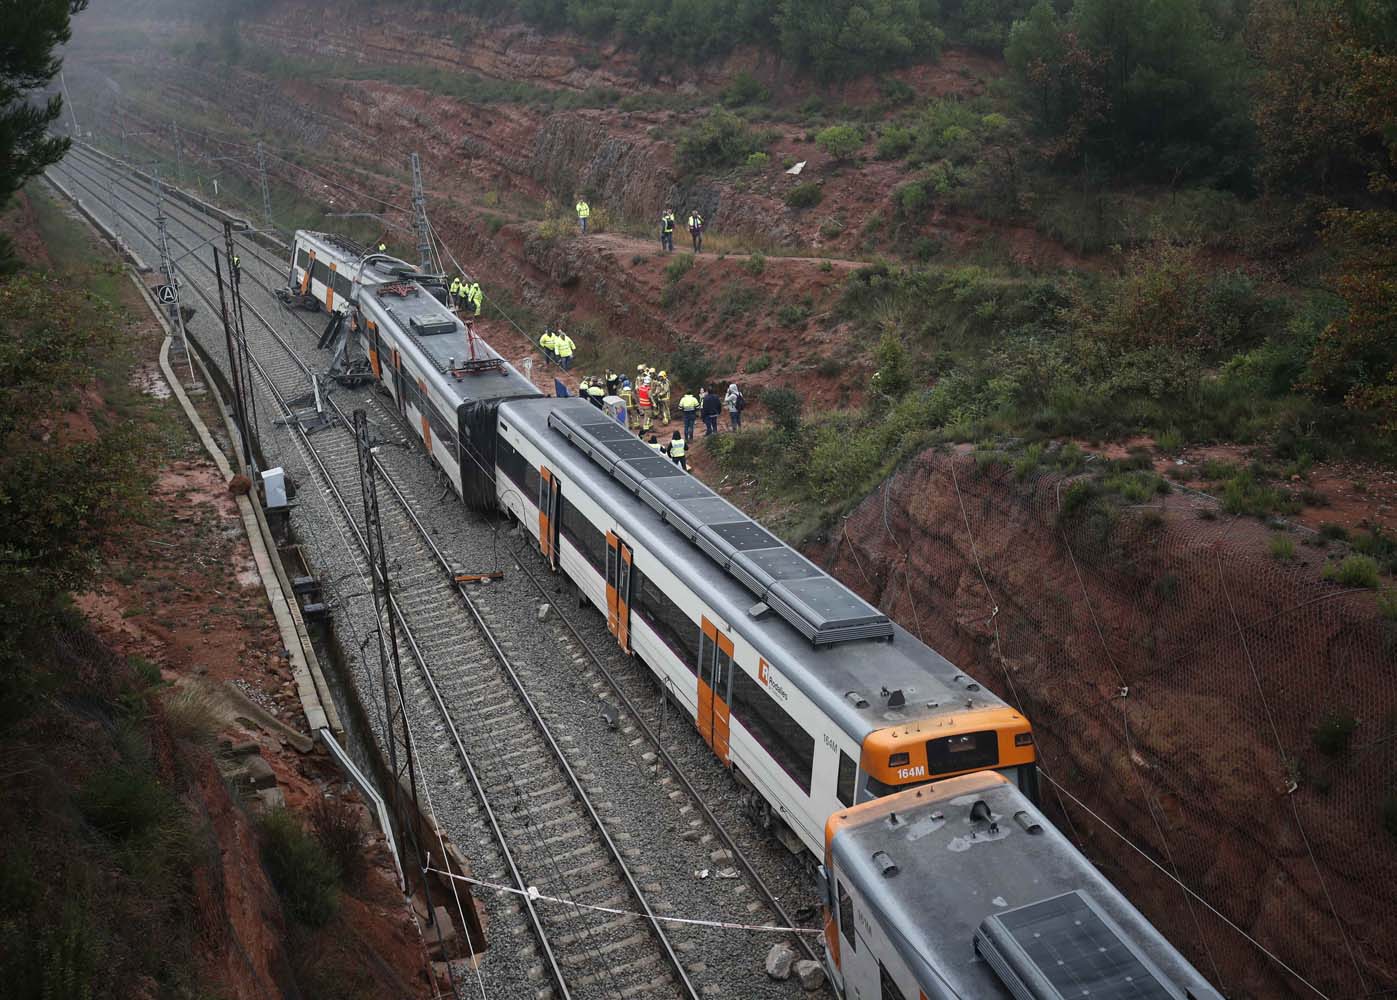 Servicios de emergencia rescatan víctimas del tren descarrilado en España (Fotos)